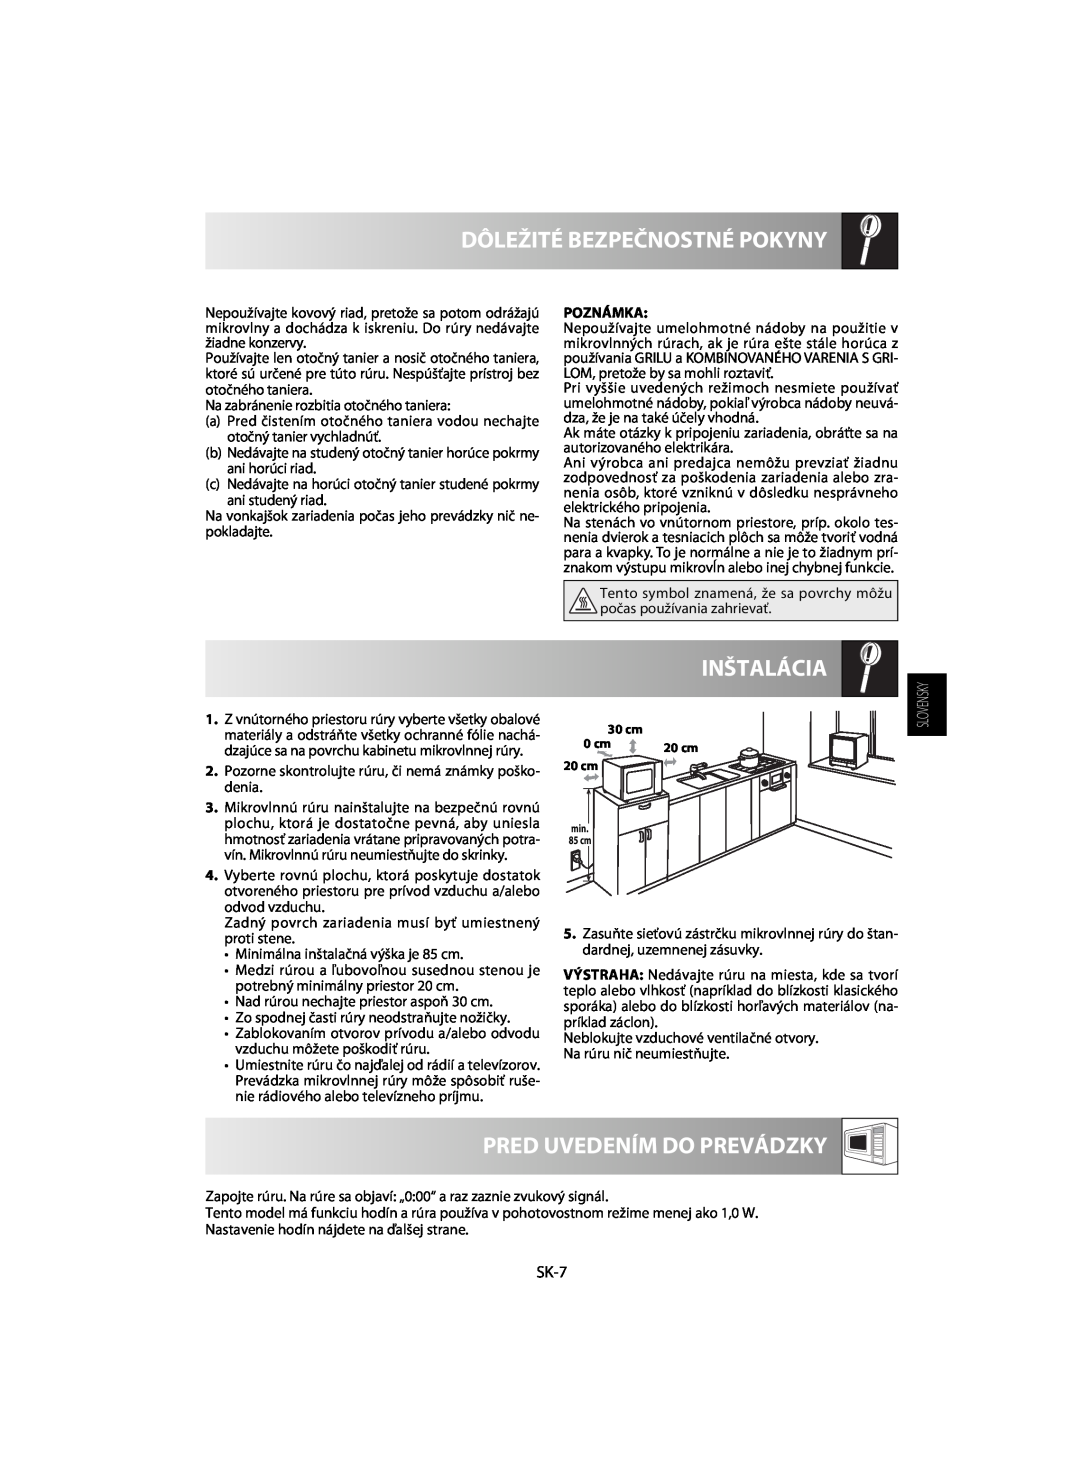 Sharp R-63ST operation manual Inštalácia, Pred Uvedením Do Prevádzky, Dôležité Bezpečnostné Pokyny, SK-7 